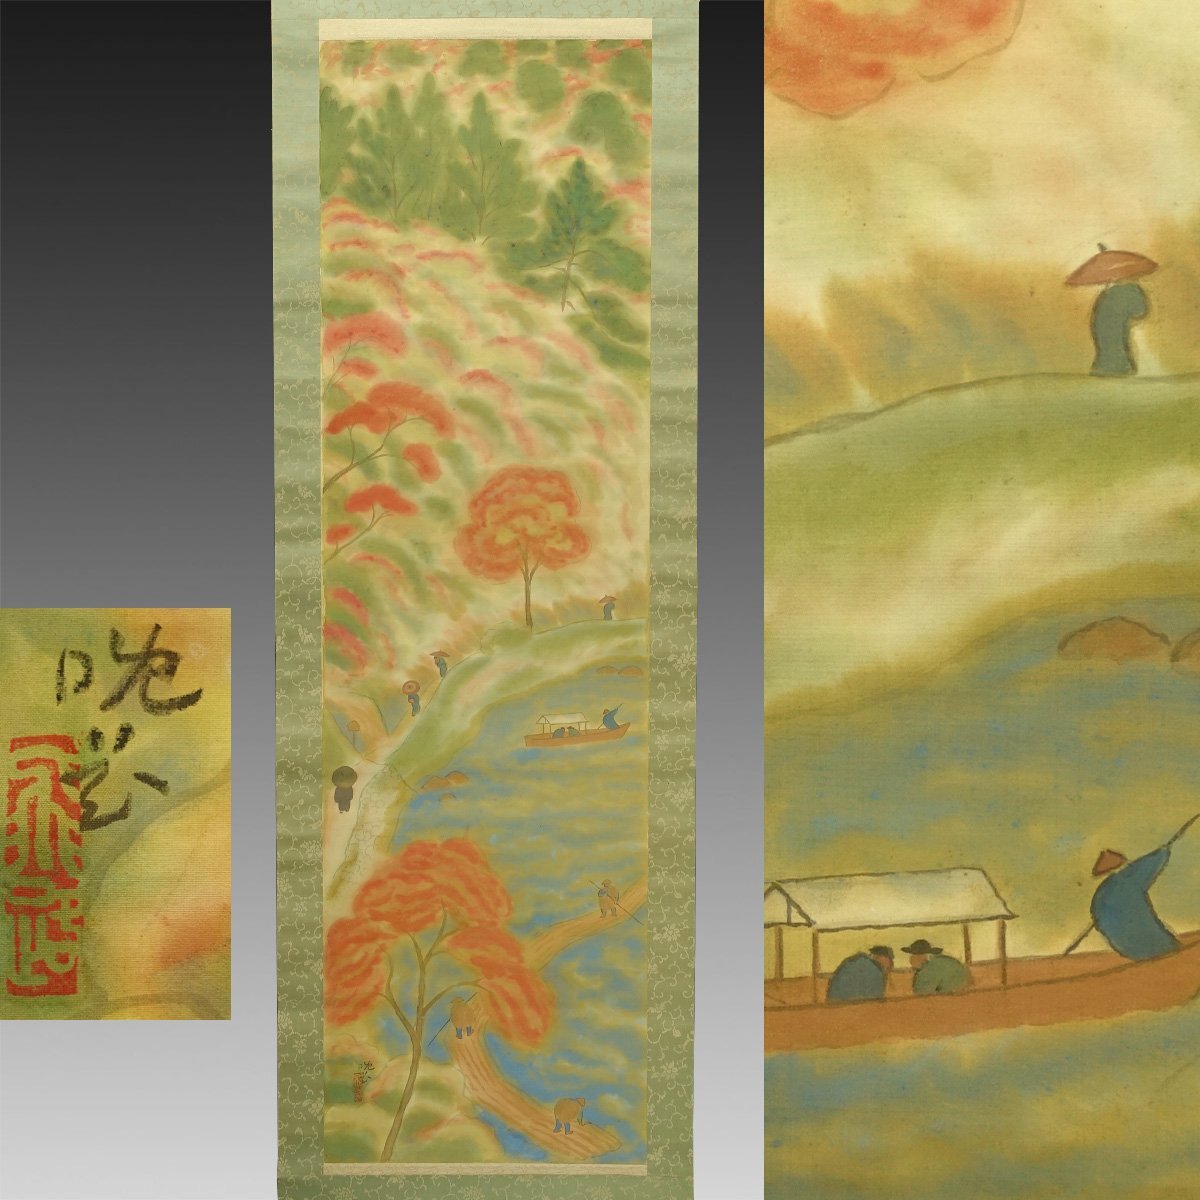 [प्रामाणिक कार्य] किमोन◆ ``नॉनगासे लेट फ्लावर अरशियामा (वसंत की बारिश के बाद)'' 1 चौड़ाई पुरानी लिखावट पुराना दस्तावेज़ पुरानी किताब जापानी पेंटिंग आधुनिक पेंटिंग कोकुगा सोसाकु क्योकाई लैंडस्केप पेंटिंग चाय समारोह क्योटो वाकायामा ताइशो-शोवा, कलाकृति, किताब, लटका हुआ स्क्रॉल